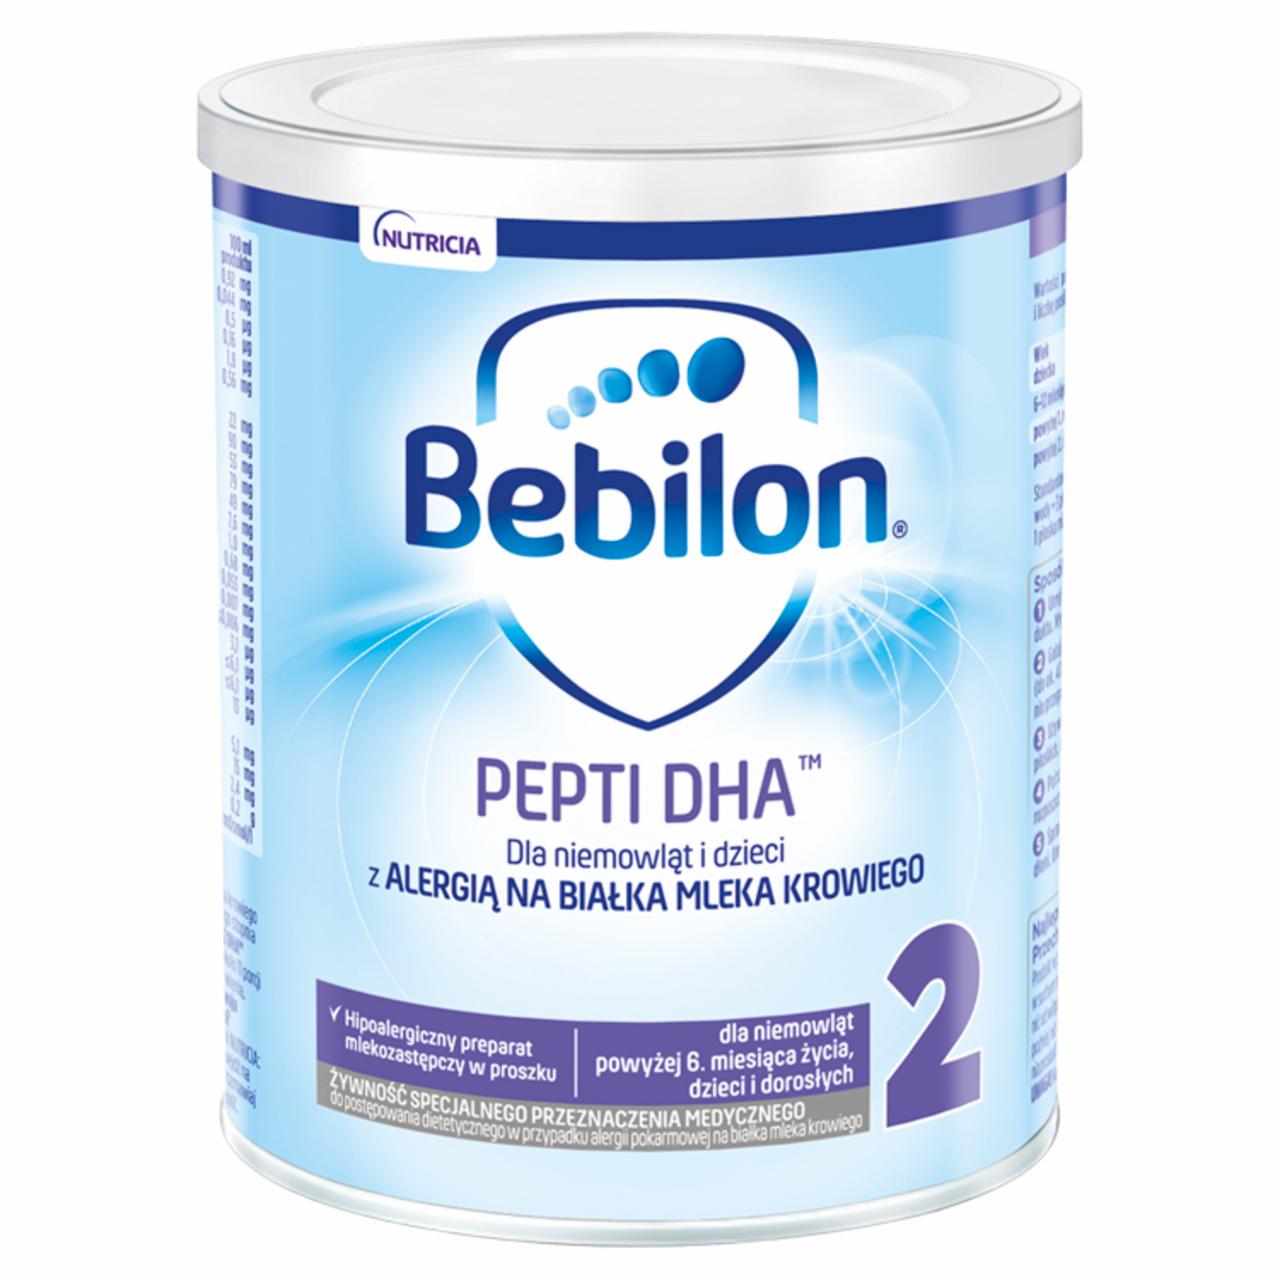 Zdjęcia - Bebilon pepti 2 DHA Żywność specjalnego przeznaczenia medycznego 400 g